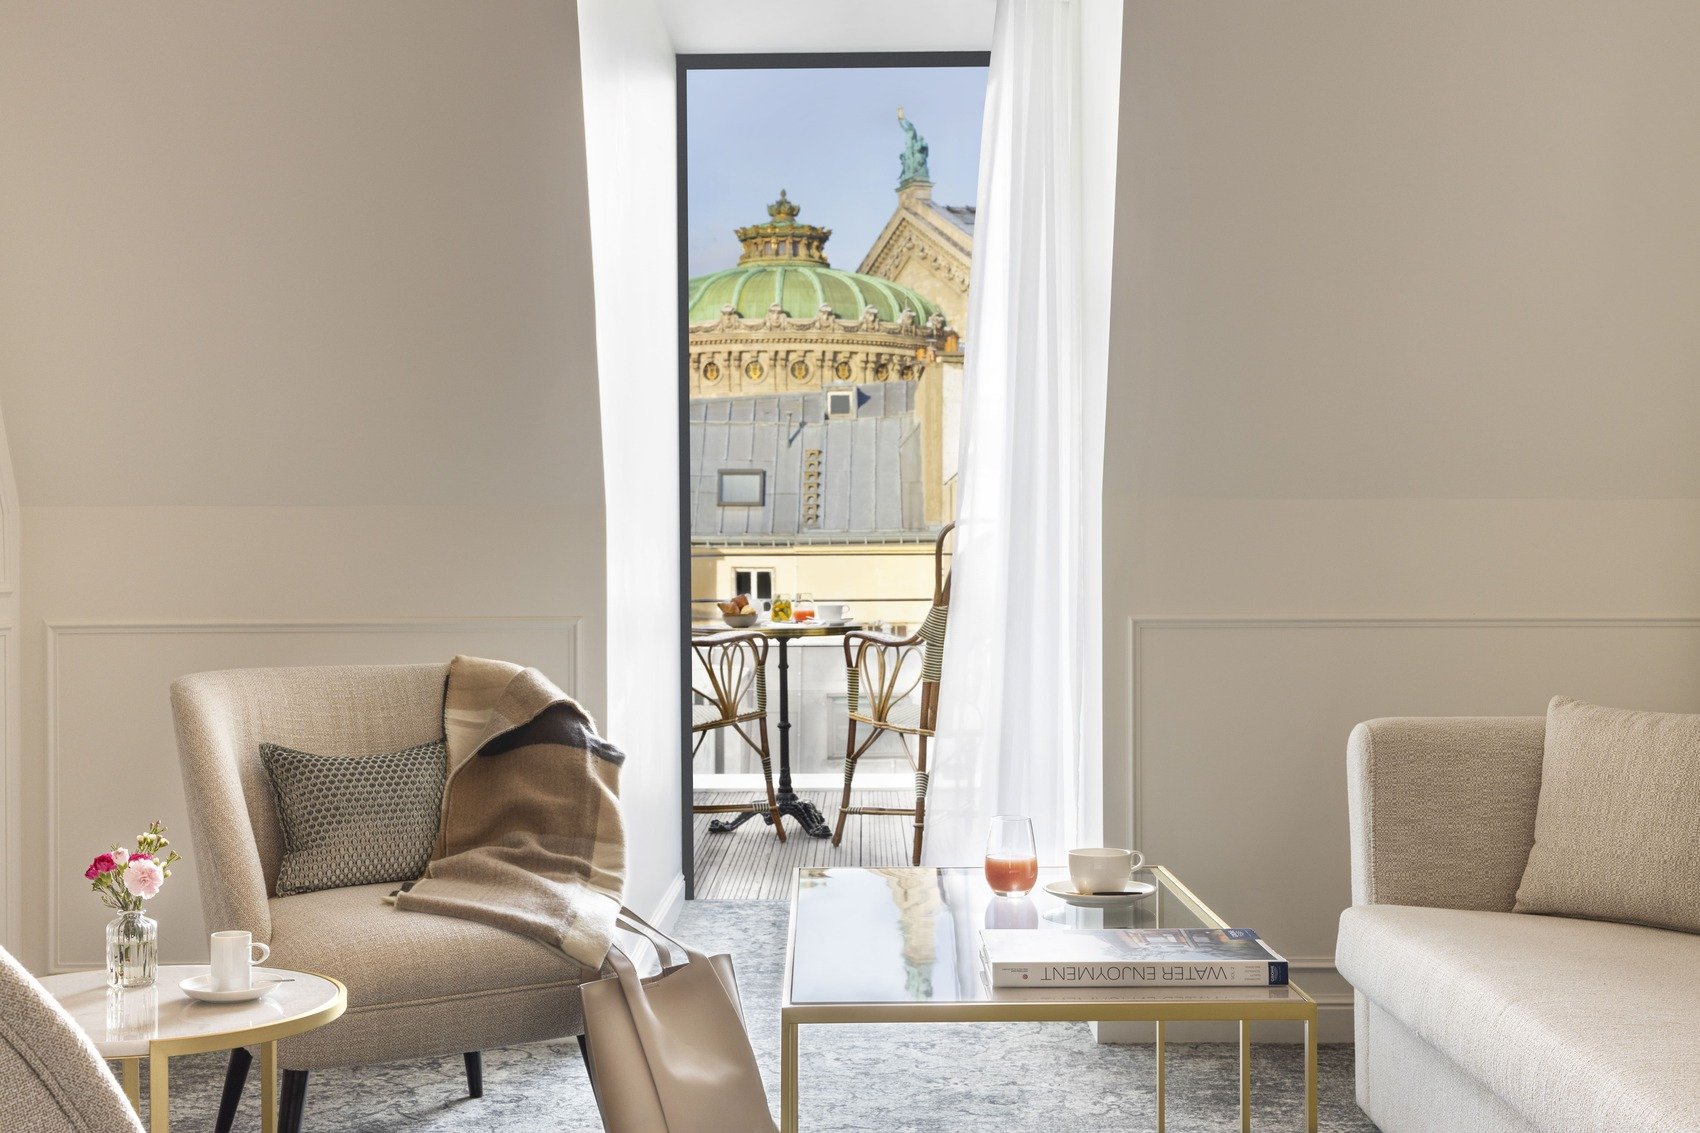 Hôtel de luxe - Maison Albar Hotels Le Vendome 5*-  hôtel avec terrasse Paris vue sur les toits de Paris